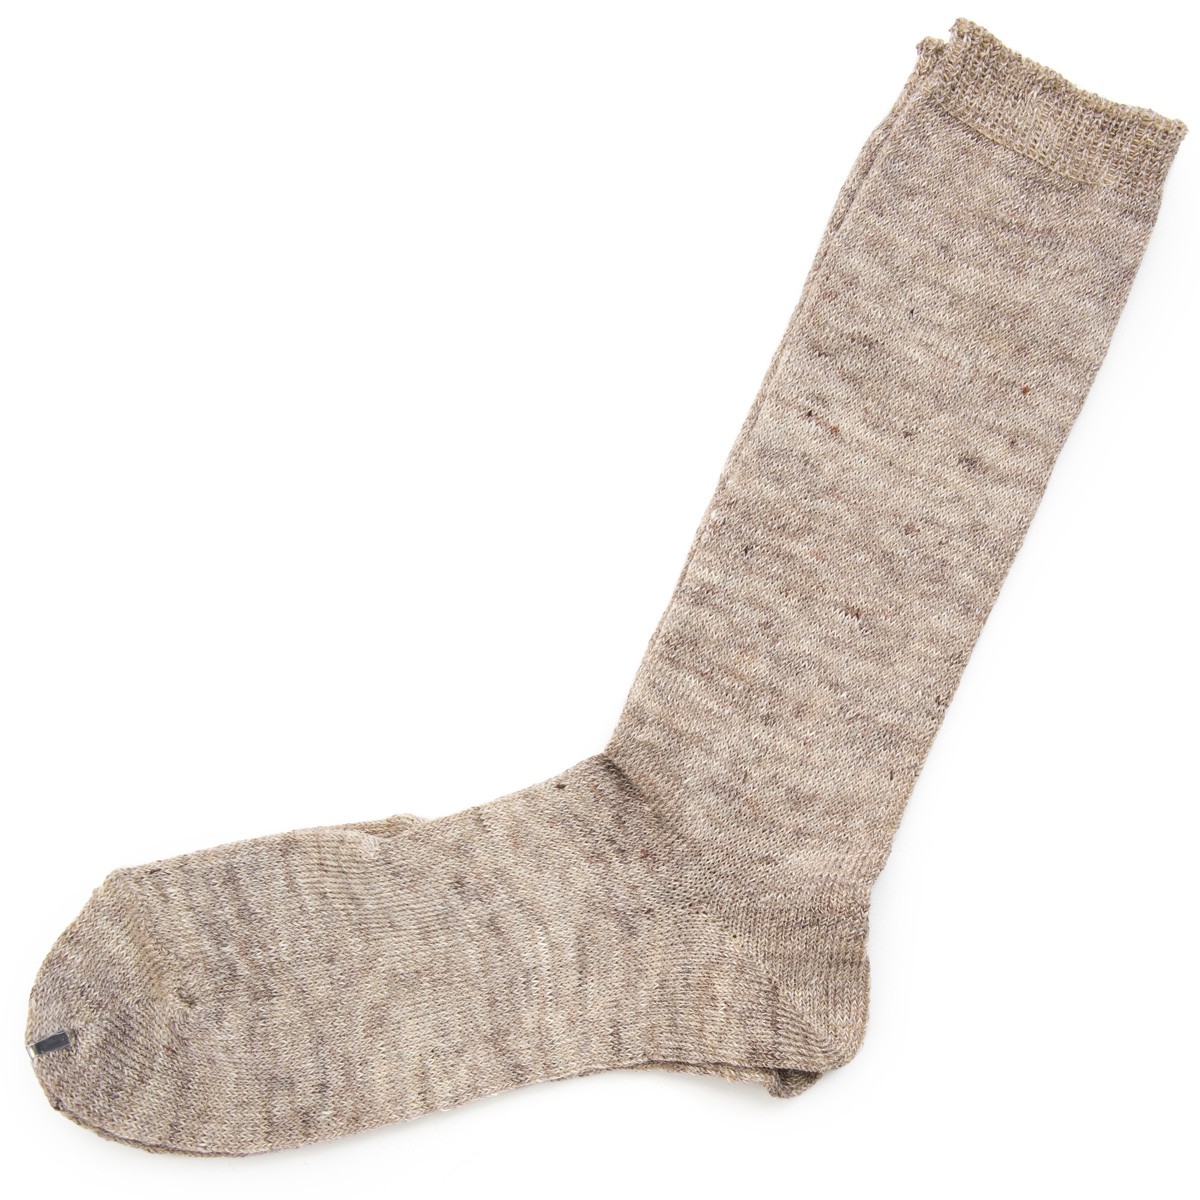 靴下 Small Stone Socks スモールストーンソックス 麻 (リネン) 90％ ソックス II :SS-027:2m50cm - 通販 -  Yahoo!ショッピング